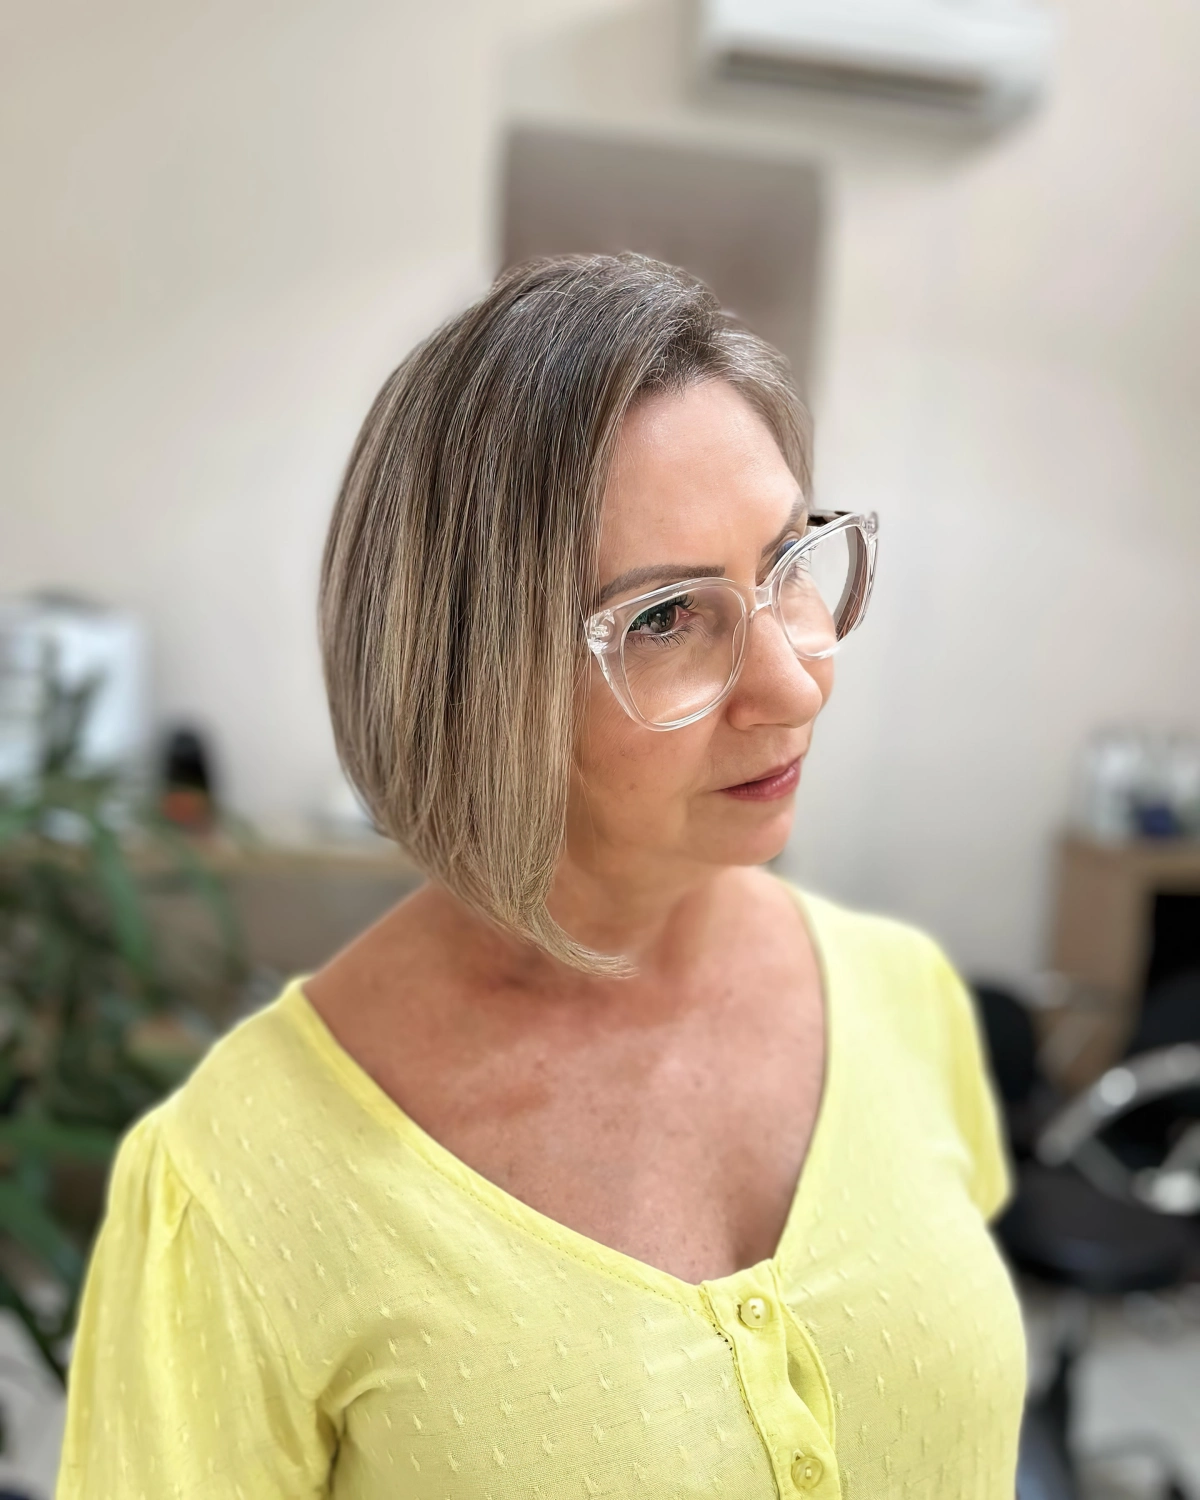 carre plongeant gris cheveux lunettes de vue oversize blouse jaune